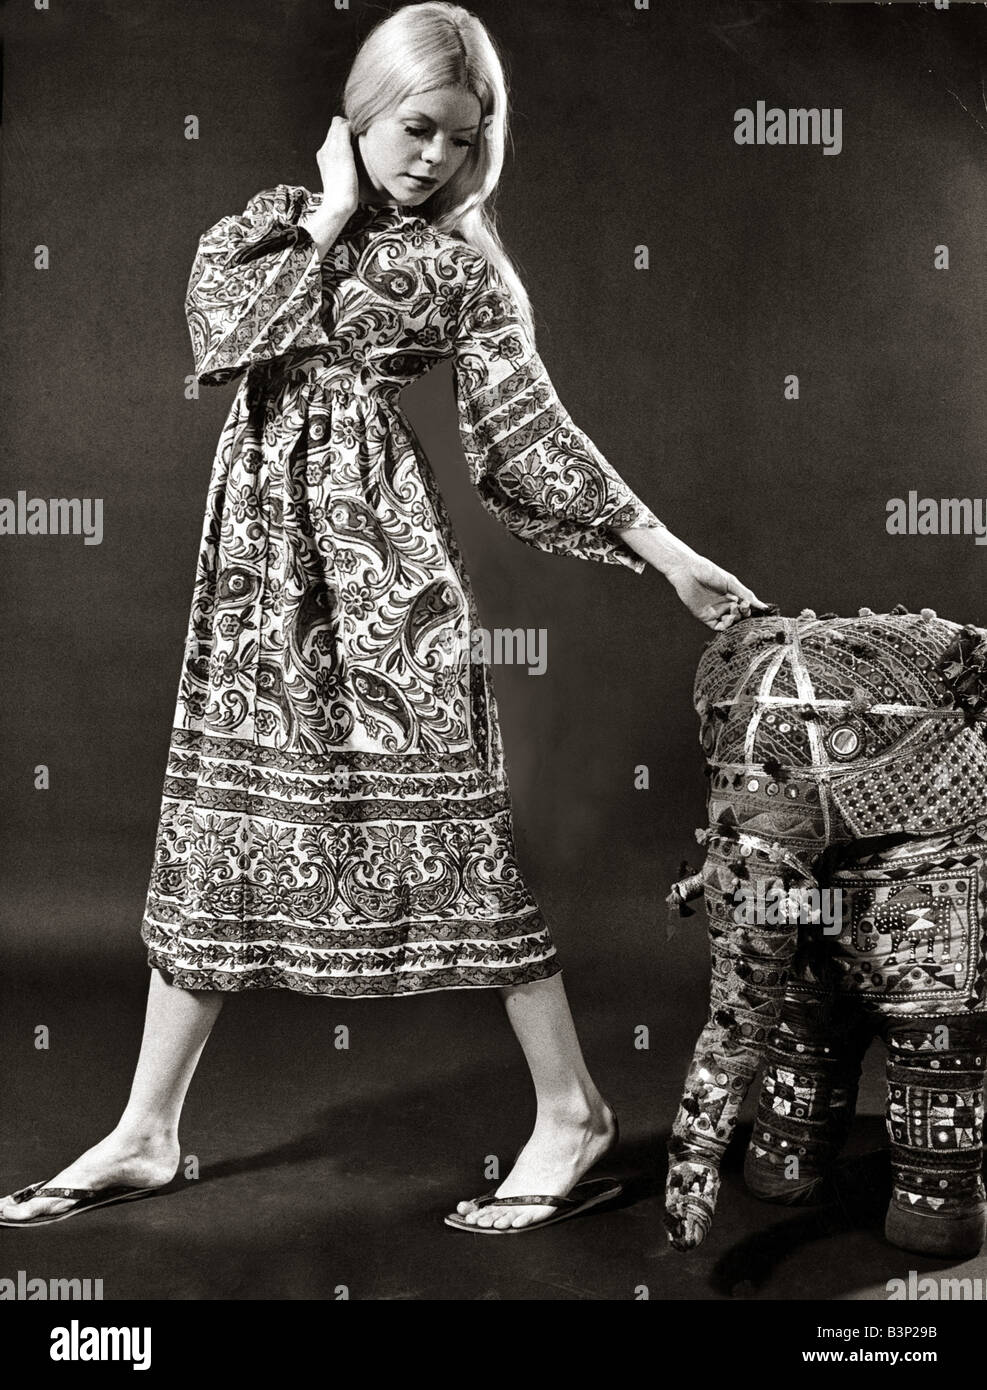 Un mannequin portant une robe midi impression swirly avec de larges manches bell fabriqués à partir de matériaux et de couvre-lit coton indien 1970 sandales mode femme femme femmes Vêtements femmes d'été estival du réveil miroir jack curtis 20 670 Banque D'Images